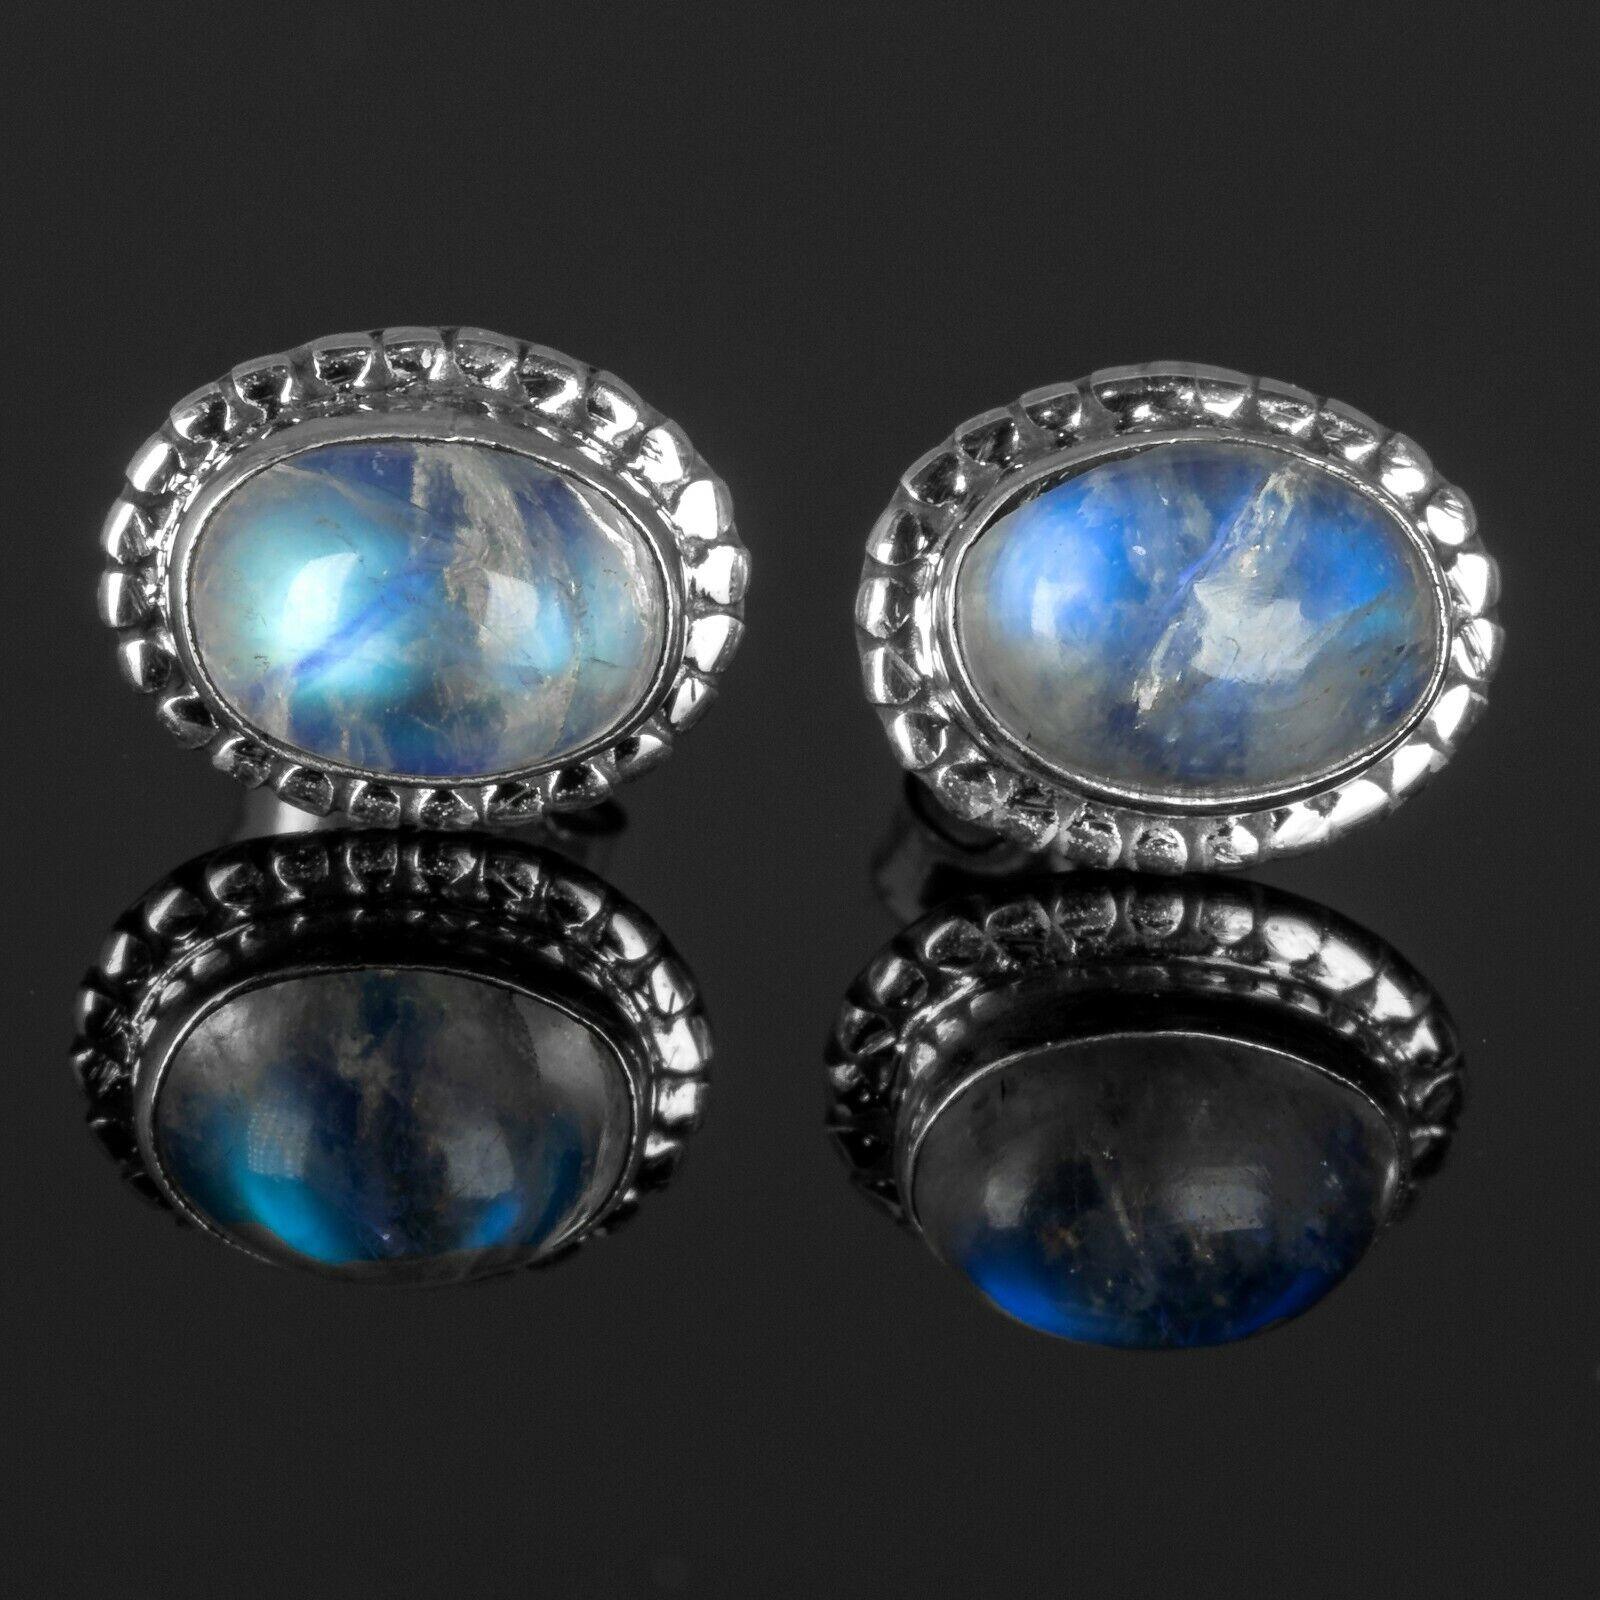 Elegant Genuine 925 Sterling Silver Moonstone Oval Earrings Studs Gemstone